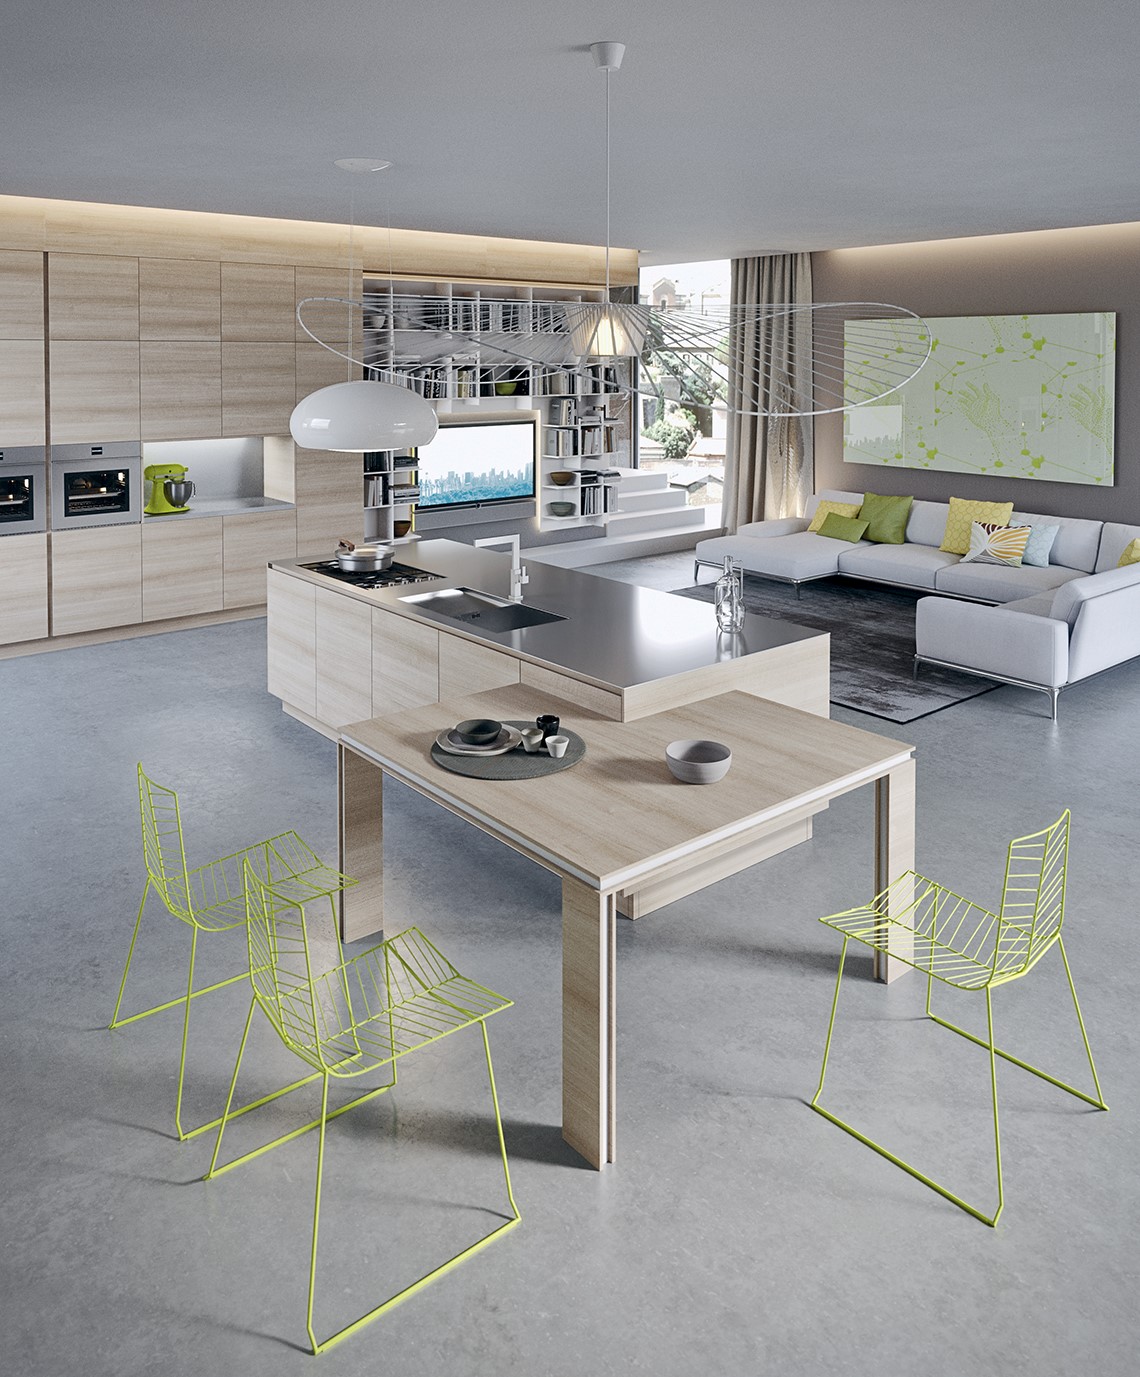 نمونه طراحی کابینت آشپزخانه مدرن | طراحی دکوراسیون منزل,دکوراسیون داخلی منزل,دکور منزل